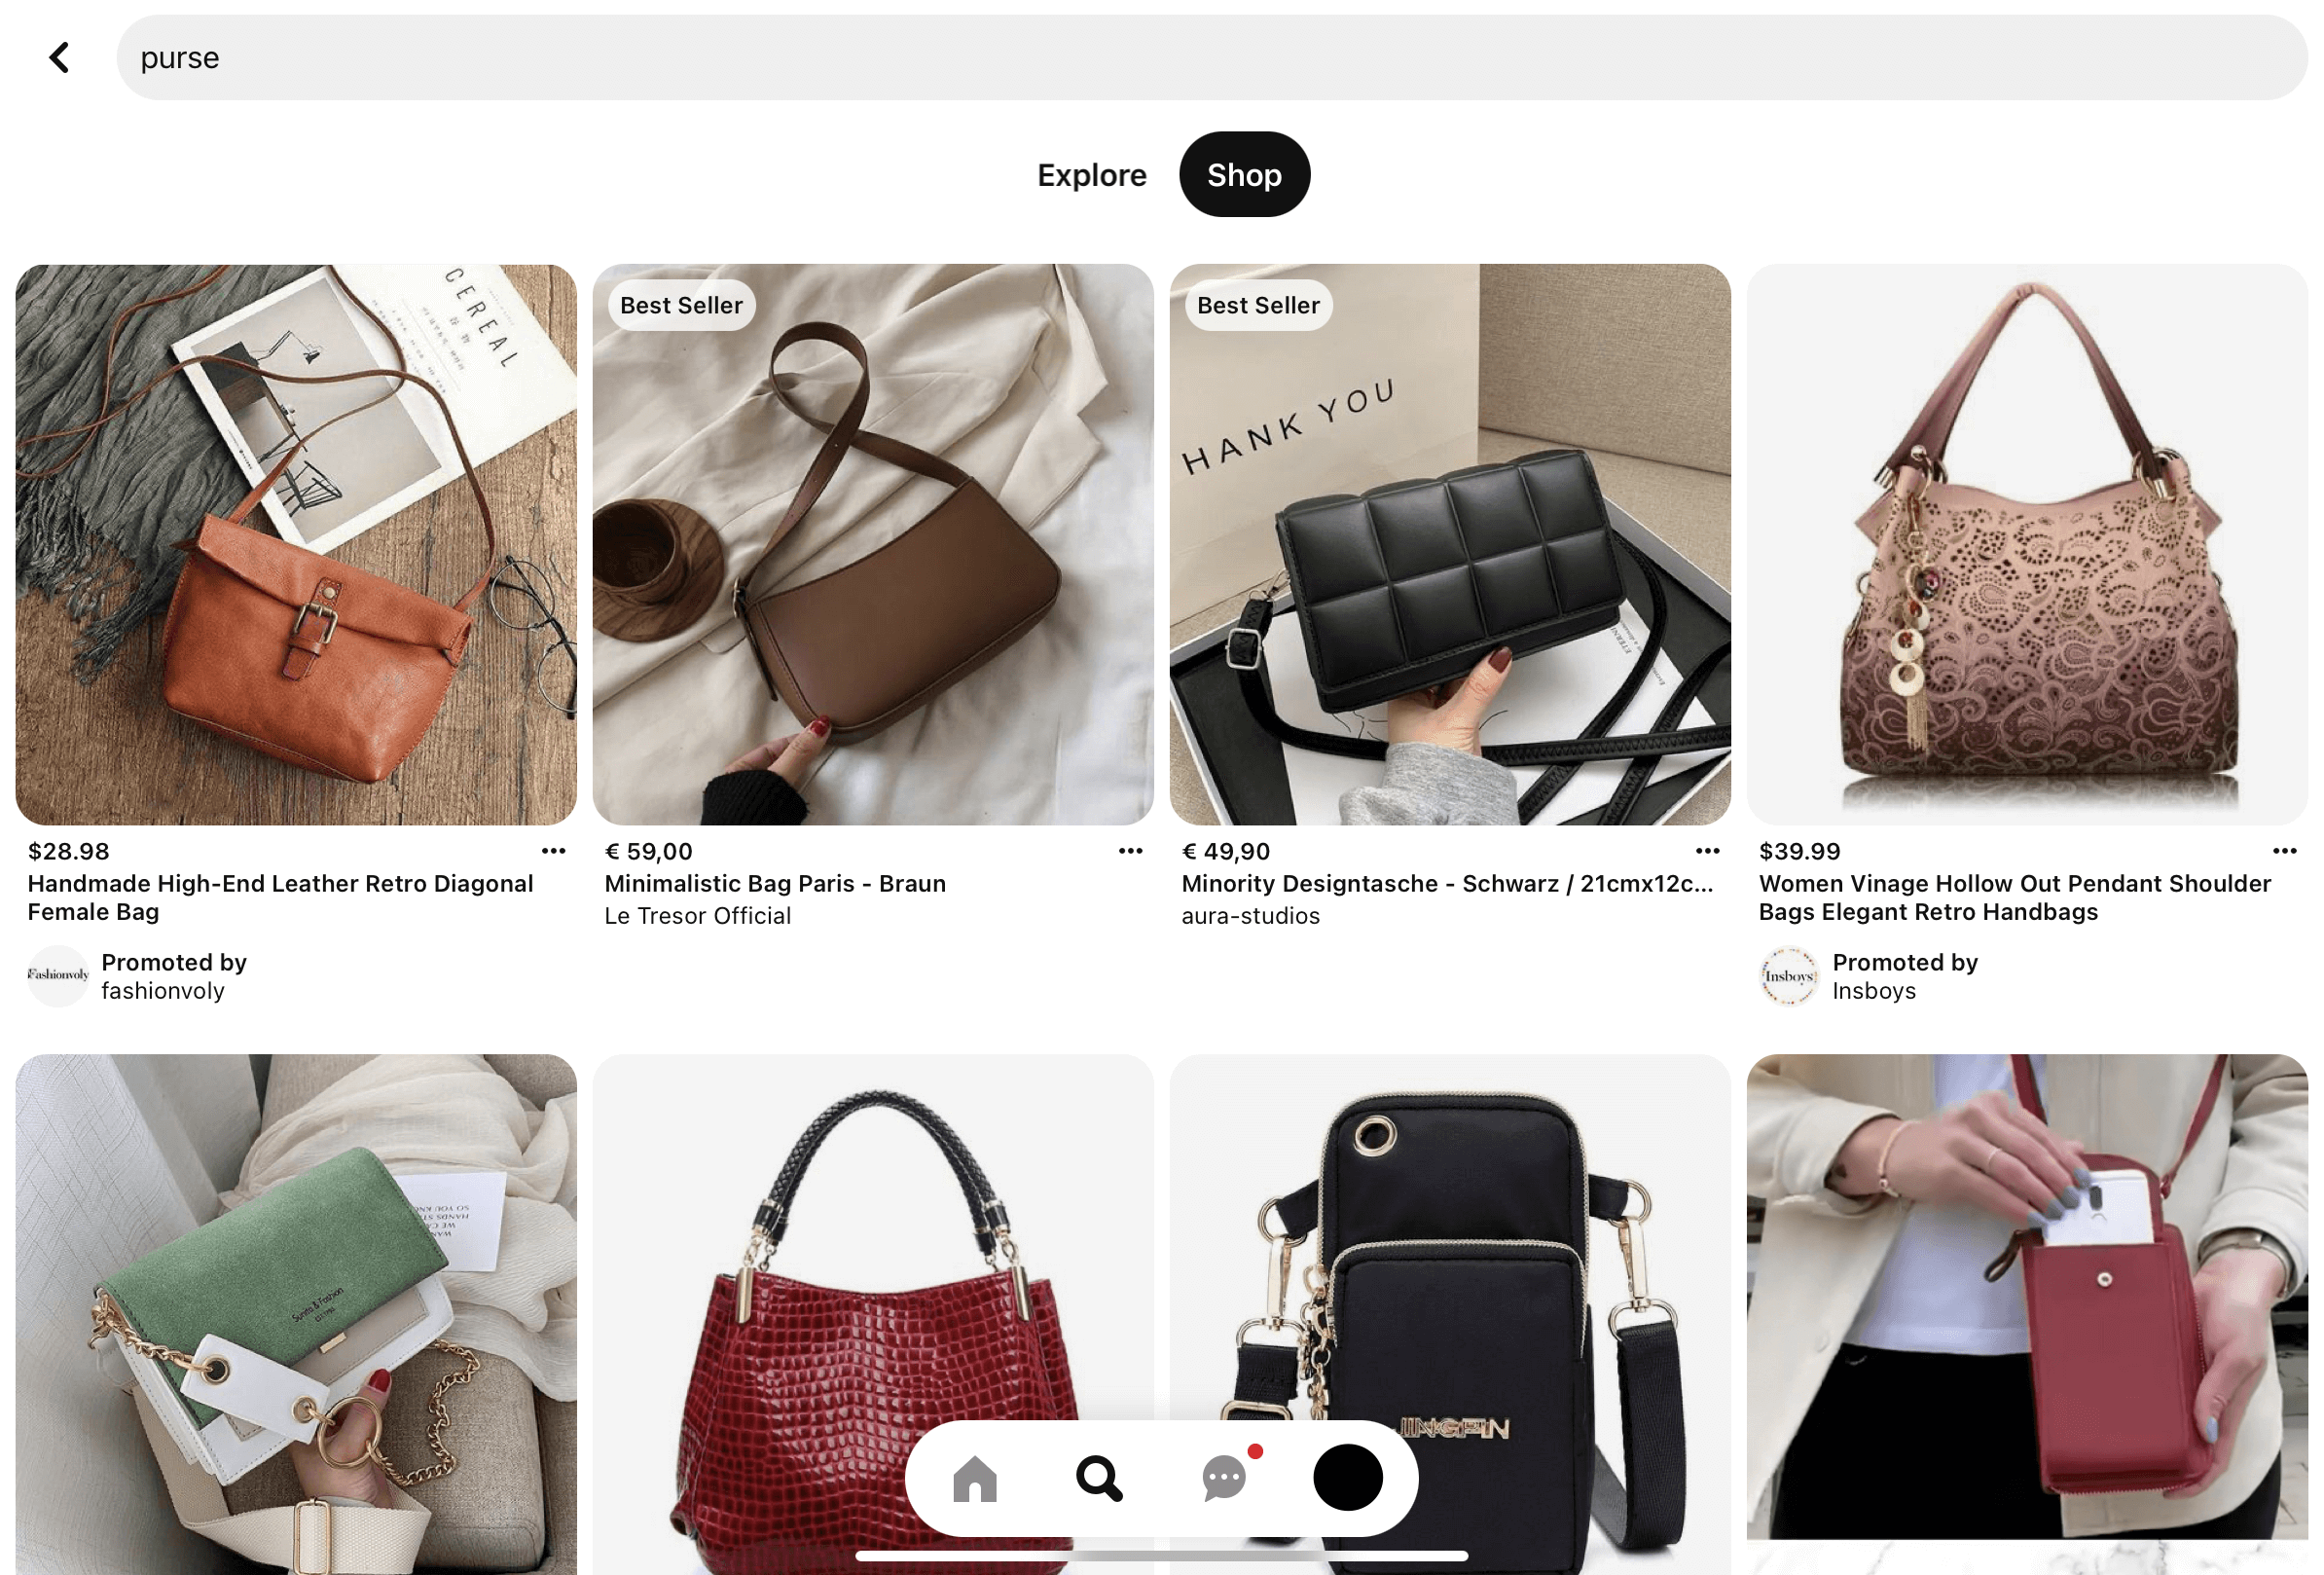 Captura de pantalla de Pinterest de la búsqueda con la palabra “purse”